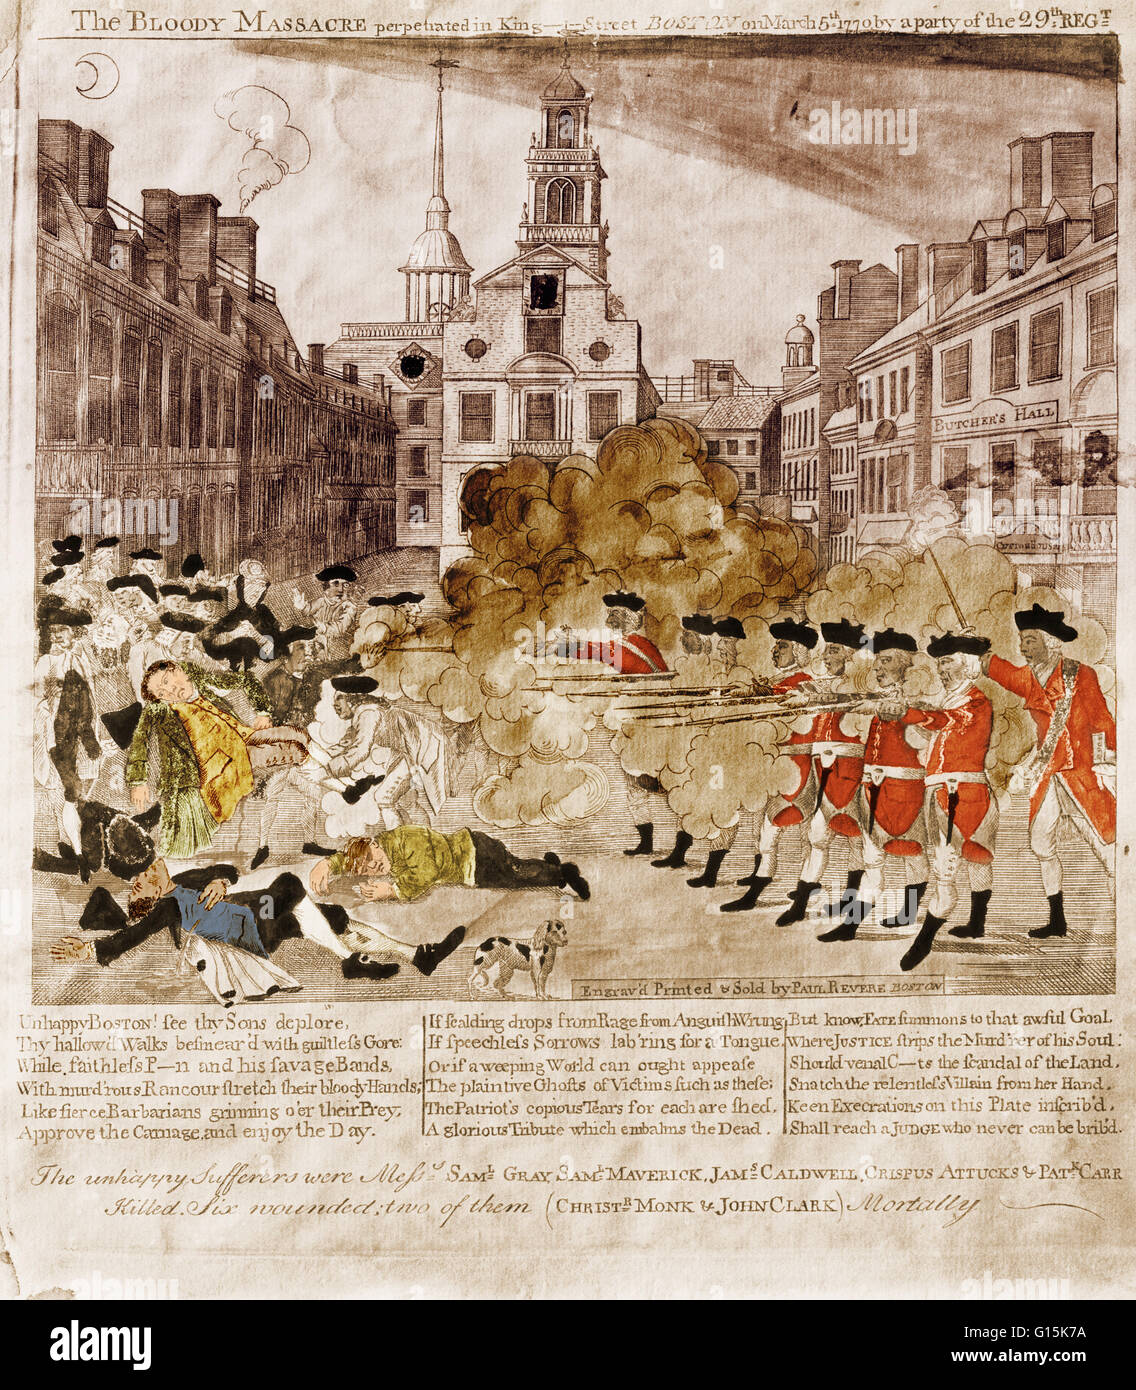 Une gravure de Paul Revere du Massacre de Boston. Le massacre de Boston, connu comme l'incident sur la rue King par les Britanniques, s'est produit le 5 mars 1770, lorsque des soldats de l'Armée Britannique tué cinq civils et blessé six autres. L'attaque a été fortement p Banque D'Images